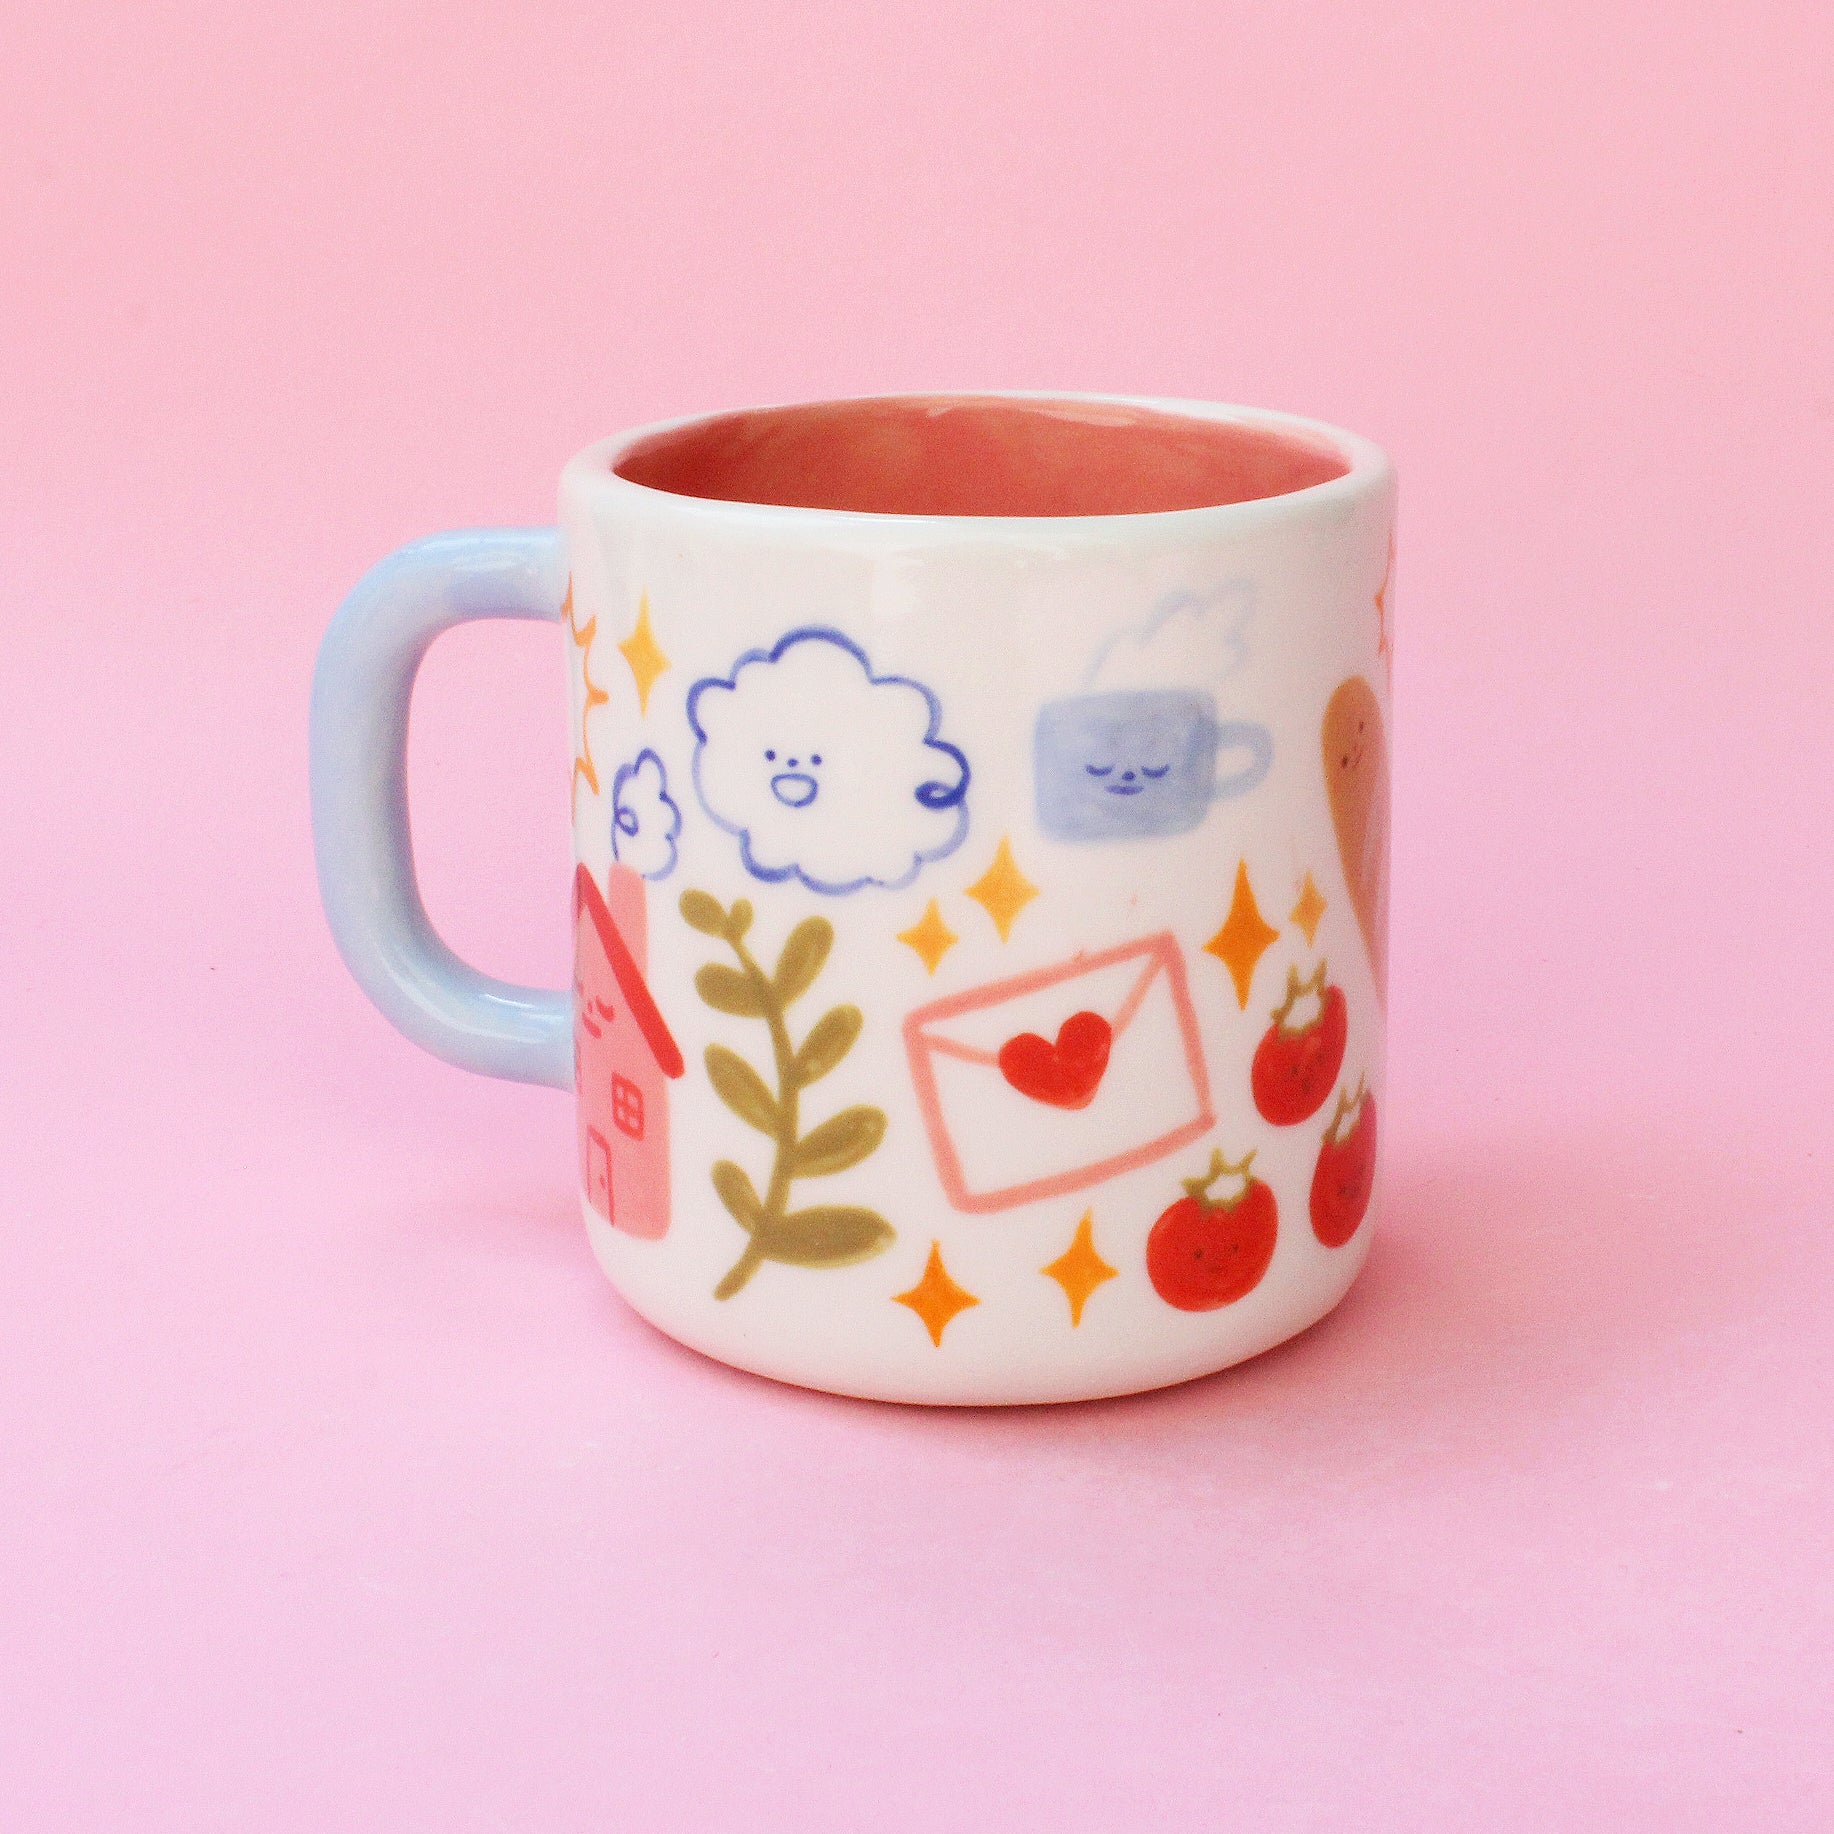 Sweet Springtime Mug ✦ Seconds ✦